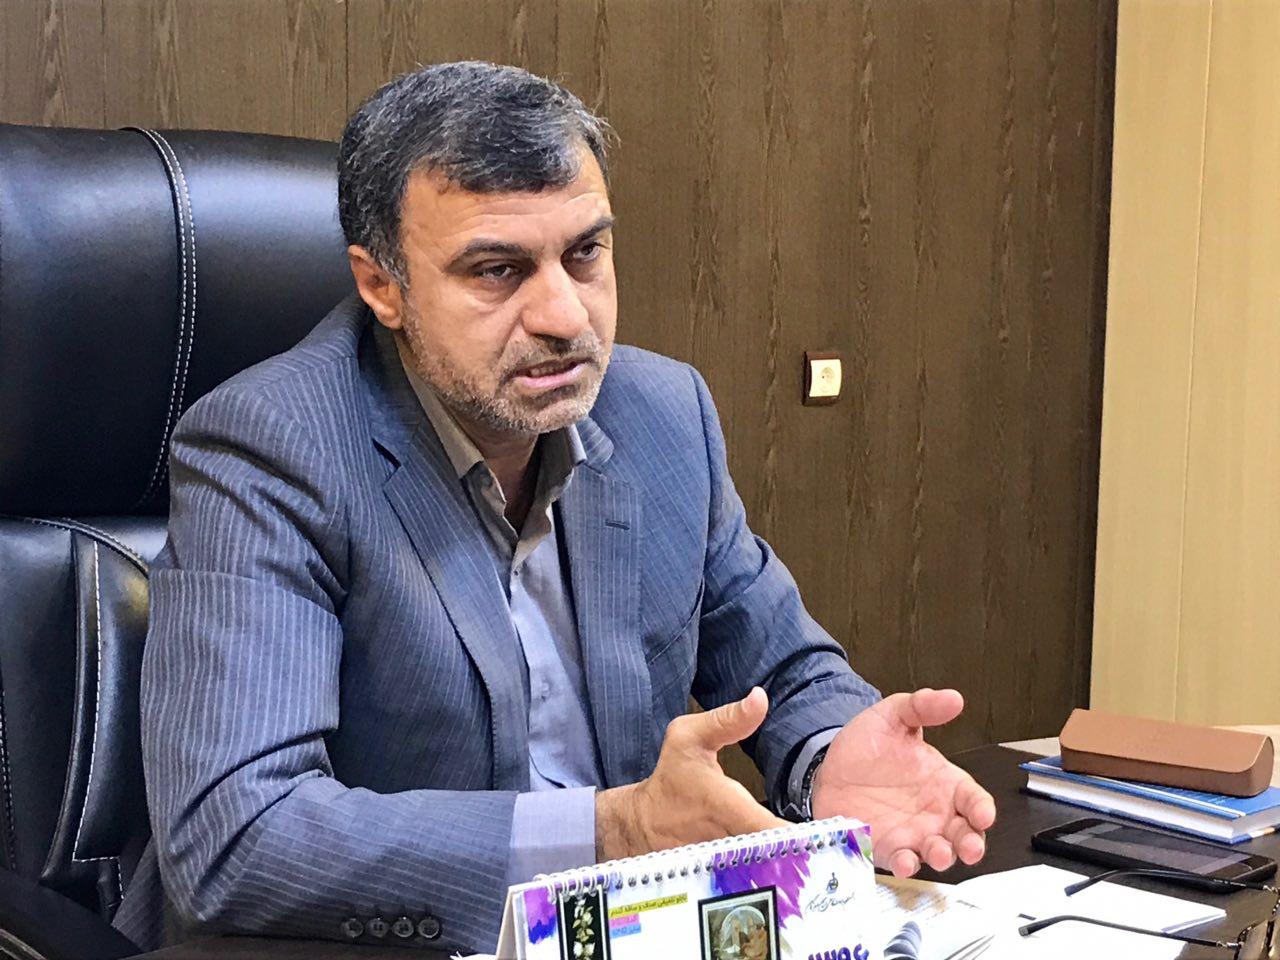 خواسته احمد مرادی از وزیر اطلاعات